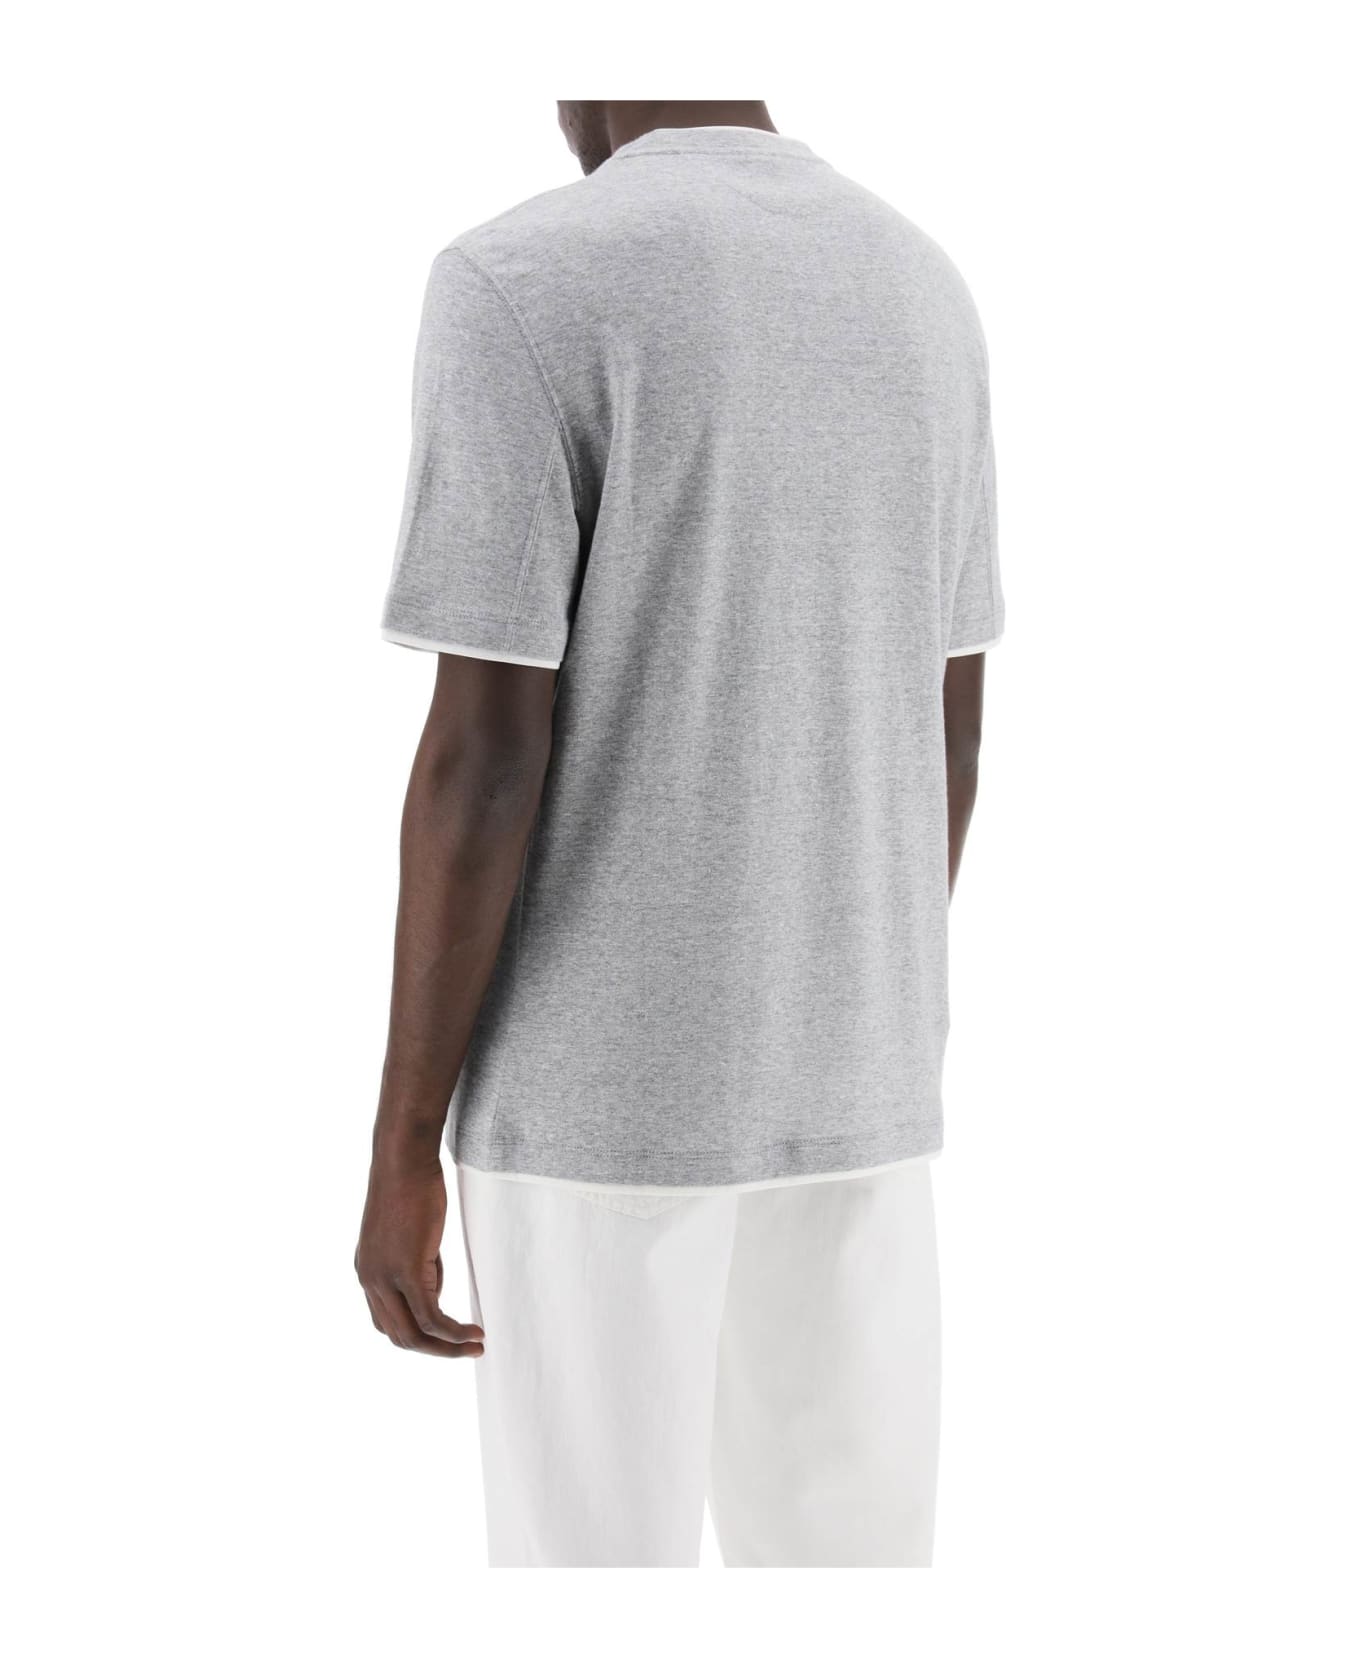 Brunello Cucinelli Cotton T-shirt - Grigio Medio+off White シャツ